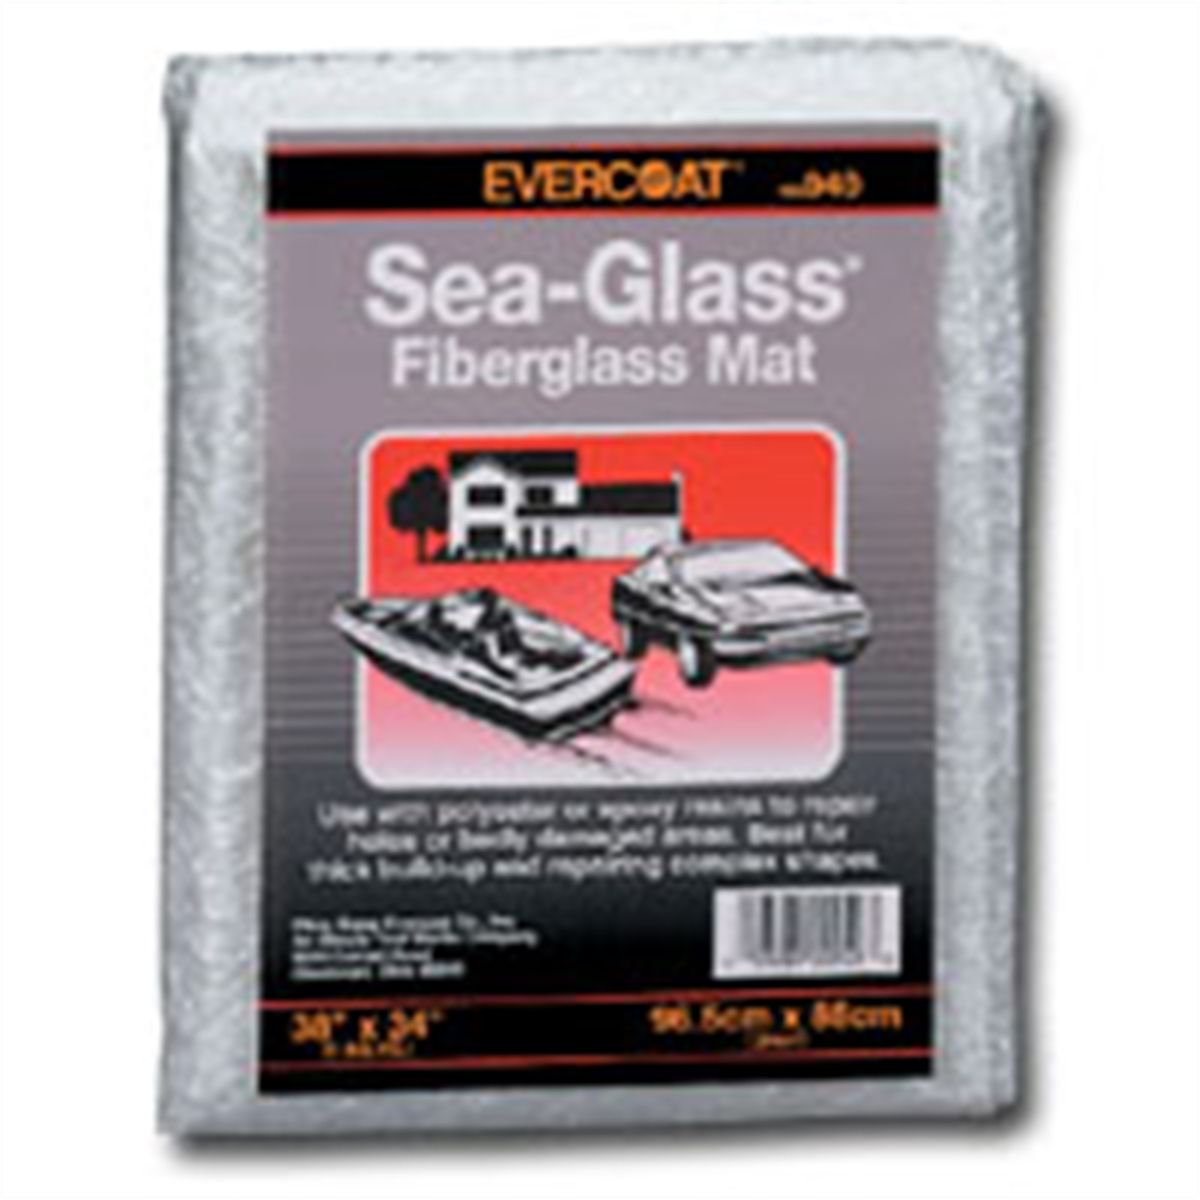 Sea-Glass Fiberglass Mat - 1 Sq Yd